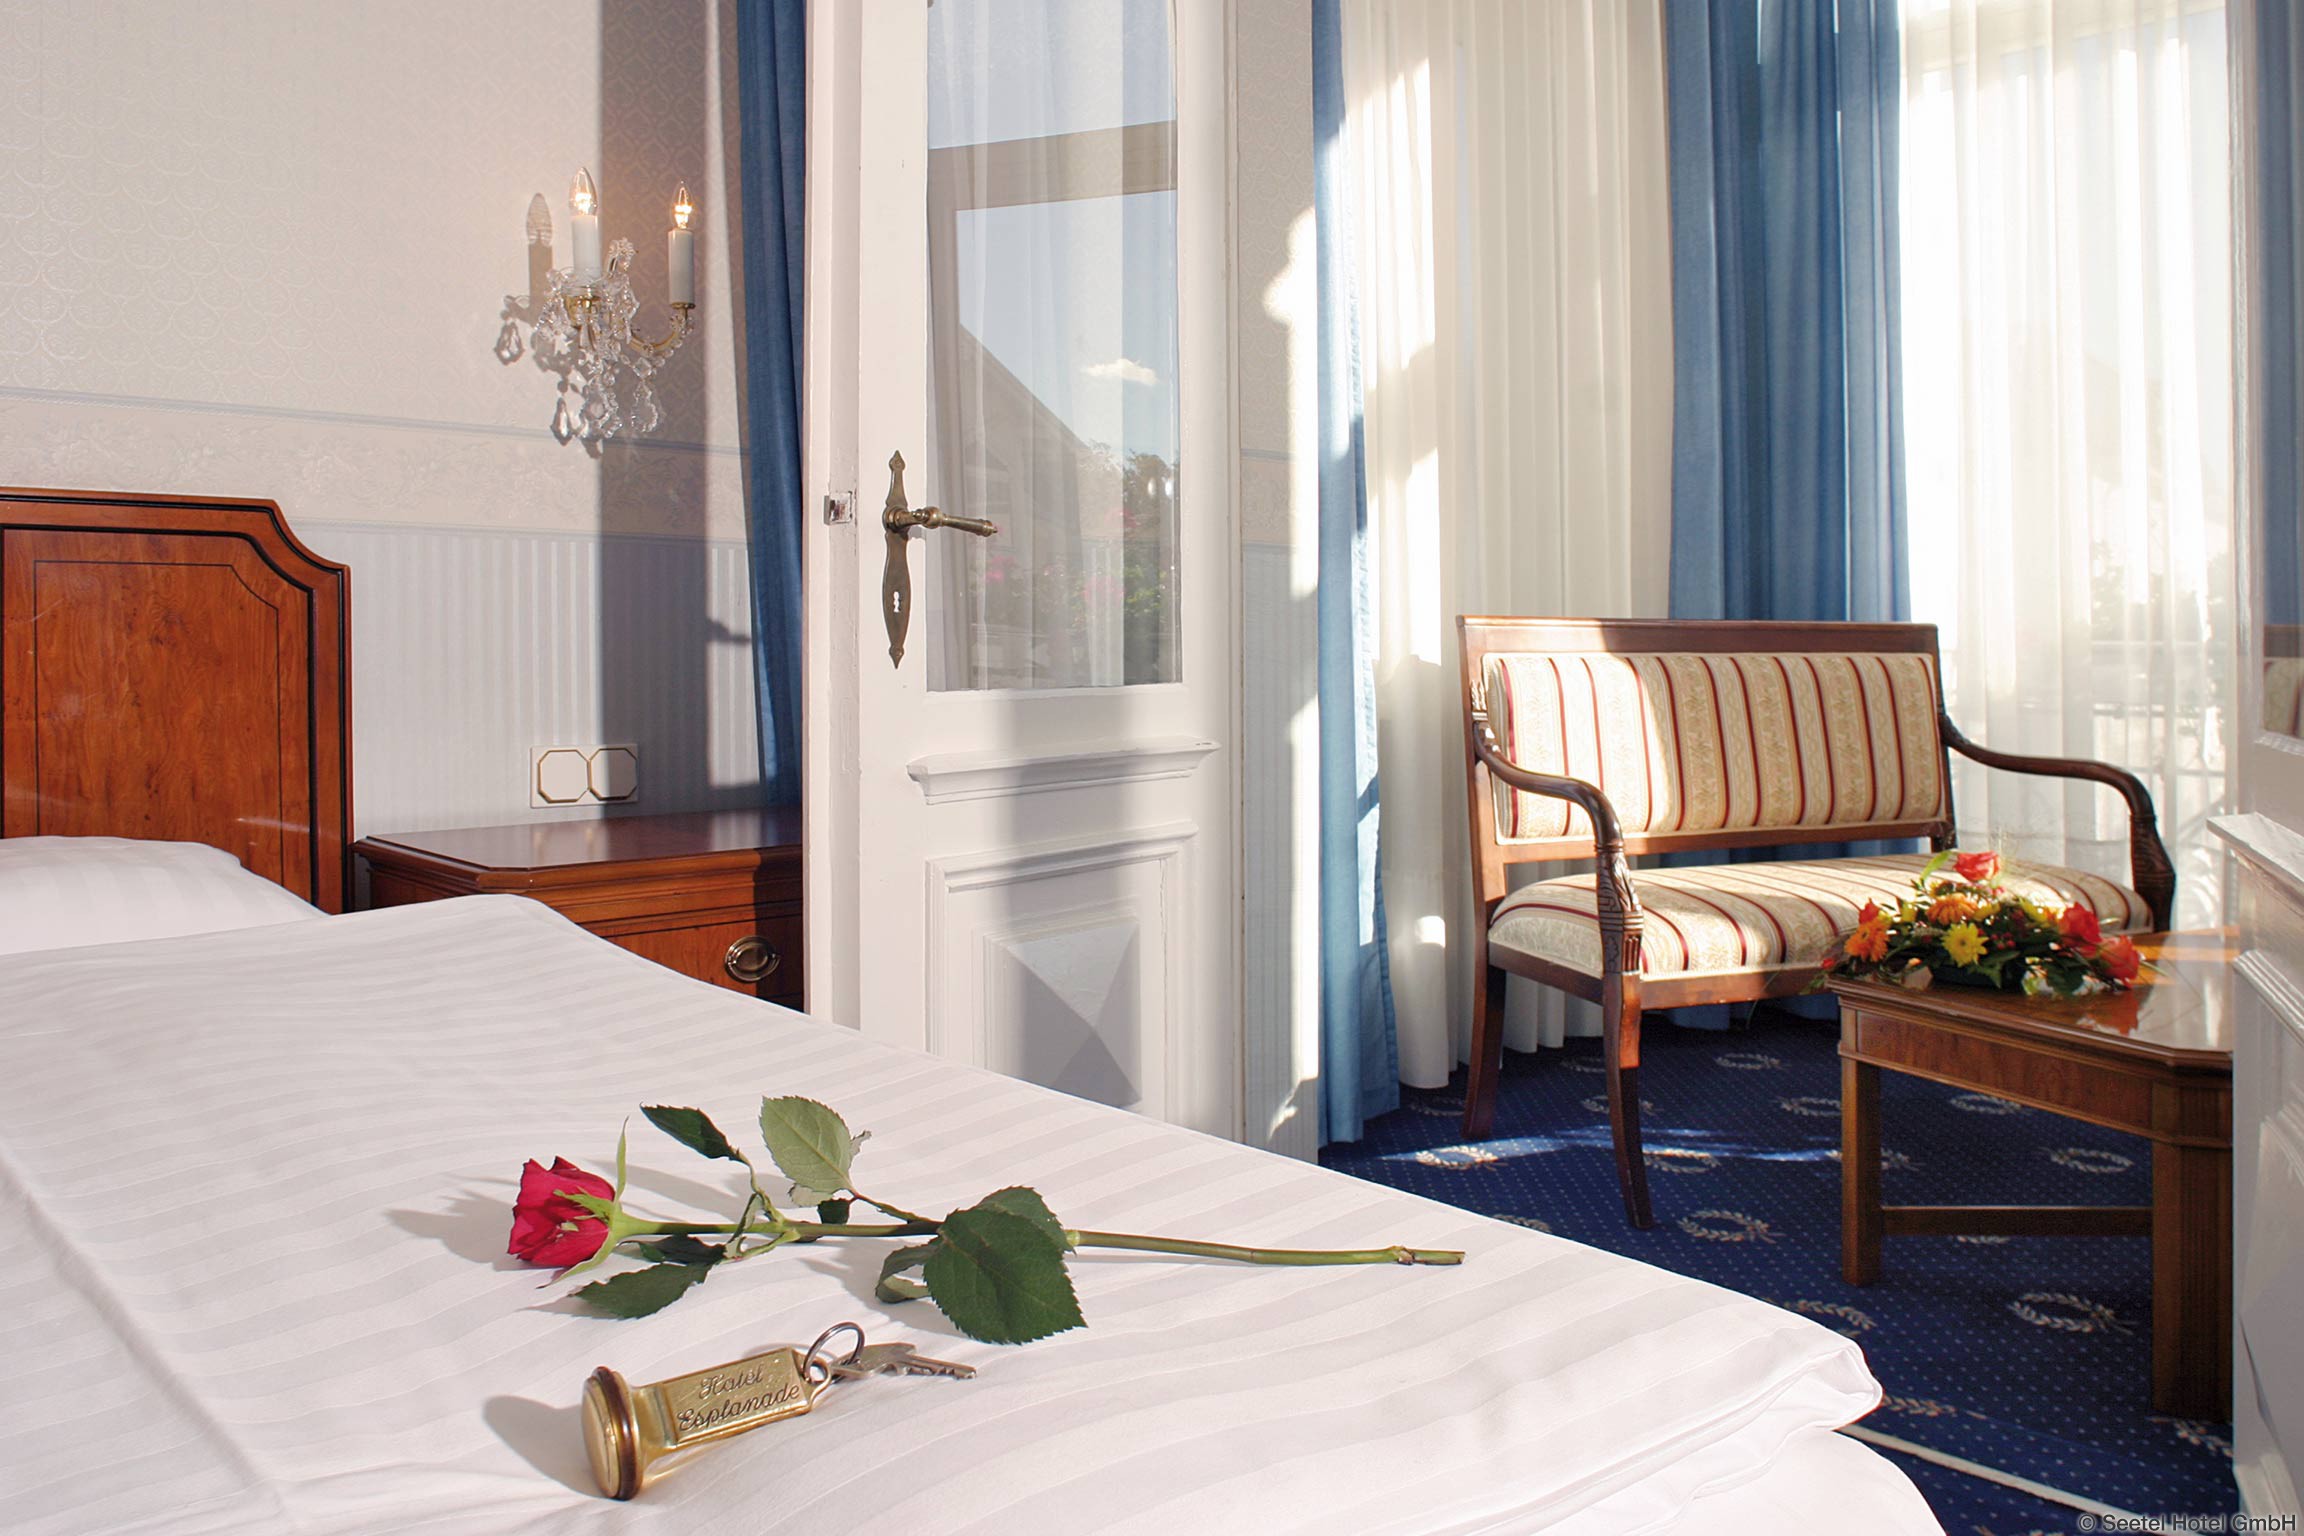 SEETELHOTEL Hotel Esplanade - Room Sample